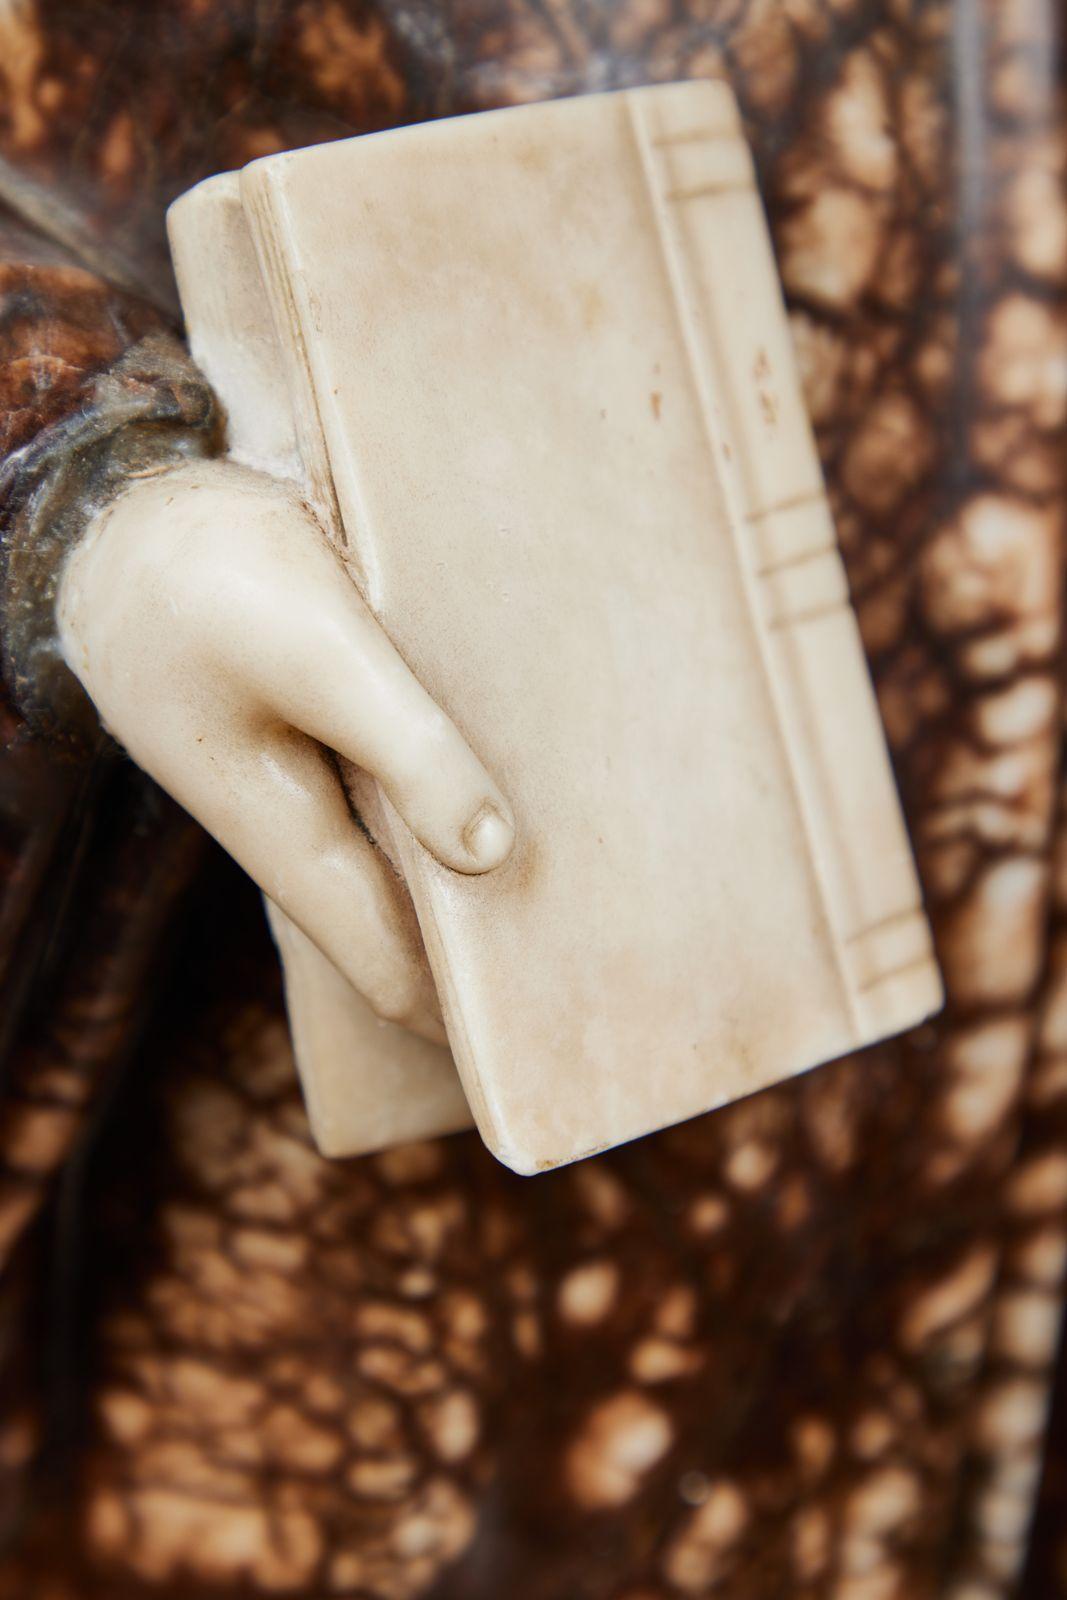 Eine feinfühlig geschnitzte, antike Skulptur aus massivem Alabaster des berühmten italienischen Dichters und Philosophen Dante Aligheri (1265-1321). Die Figur ist in ein reiches, fließendes Gewand gekleidet, hält ein Buch in der Hand und trägt eine